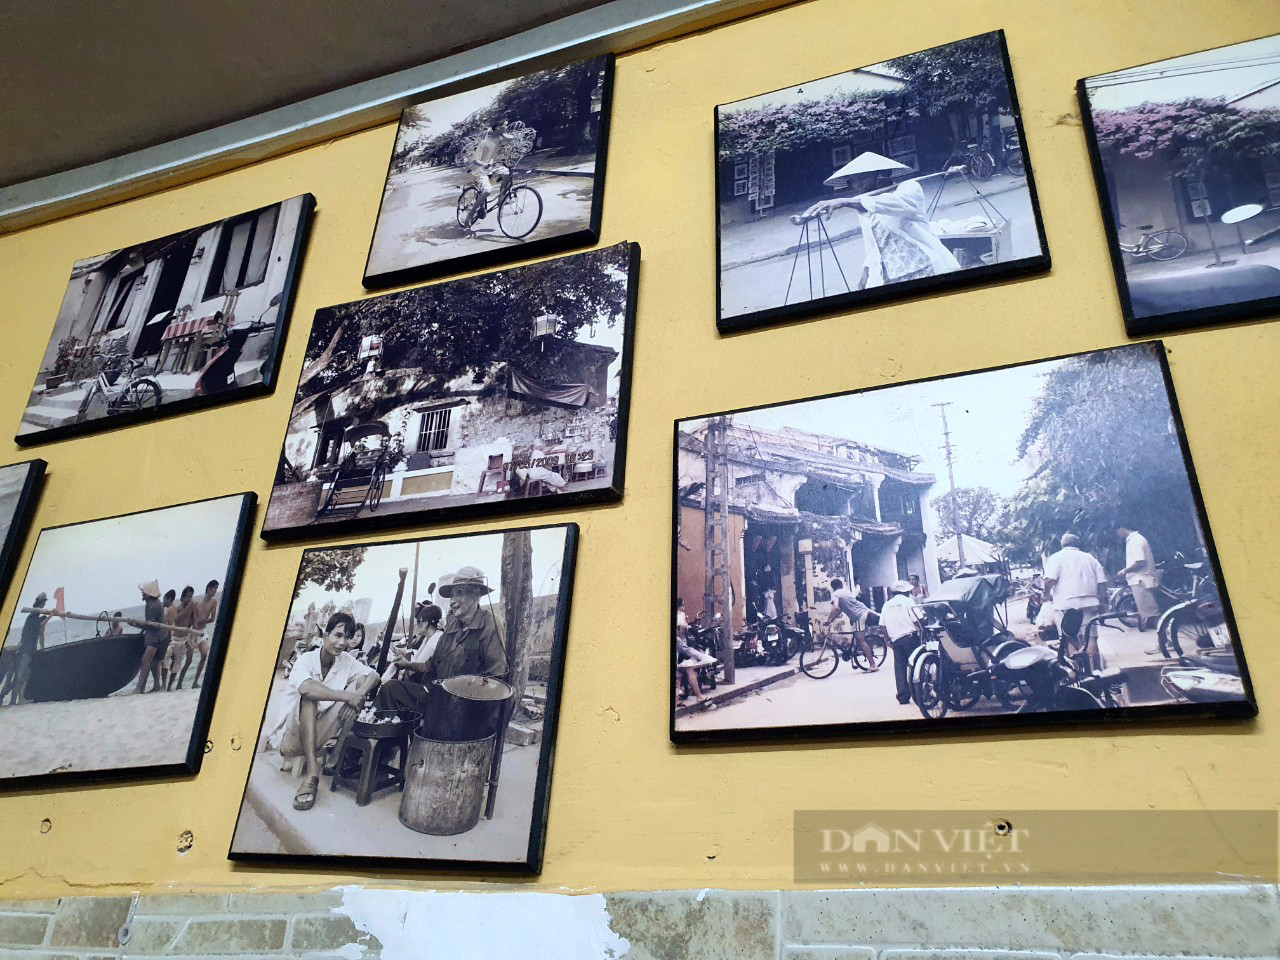 Sài Gòn quán: Địa chỉ ẩm thực xứ Quảng nổi tiếng bậc nhất, chủ nhân là nhà văn của nhiều thế hệ độc giả - Ảnh 3.